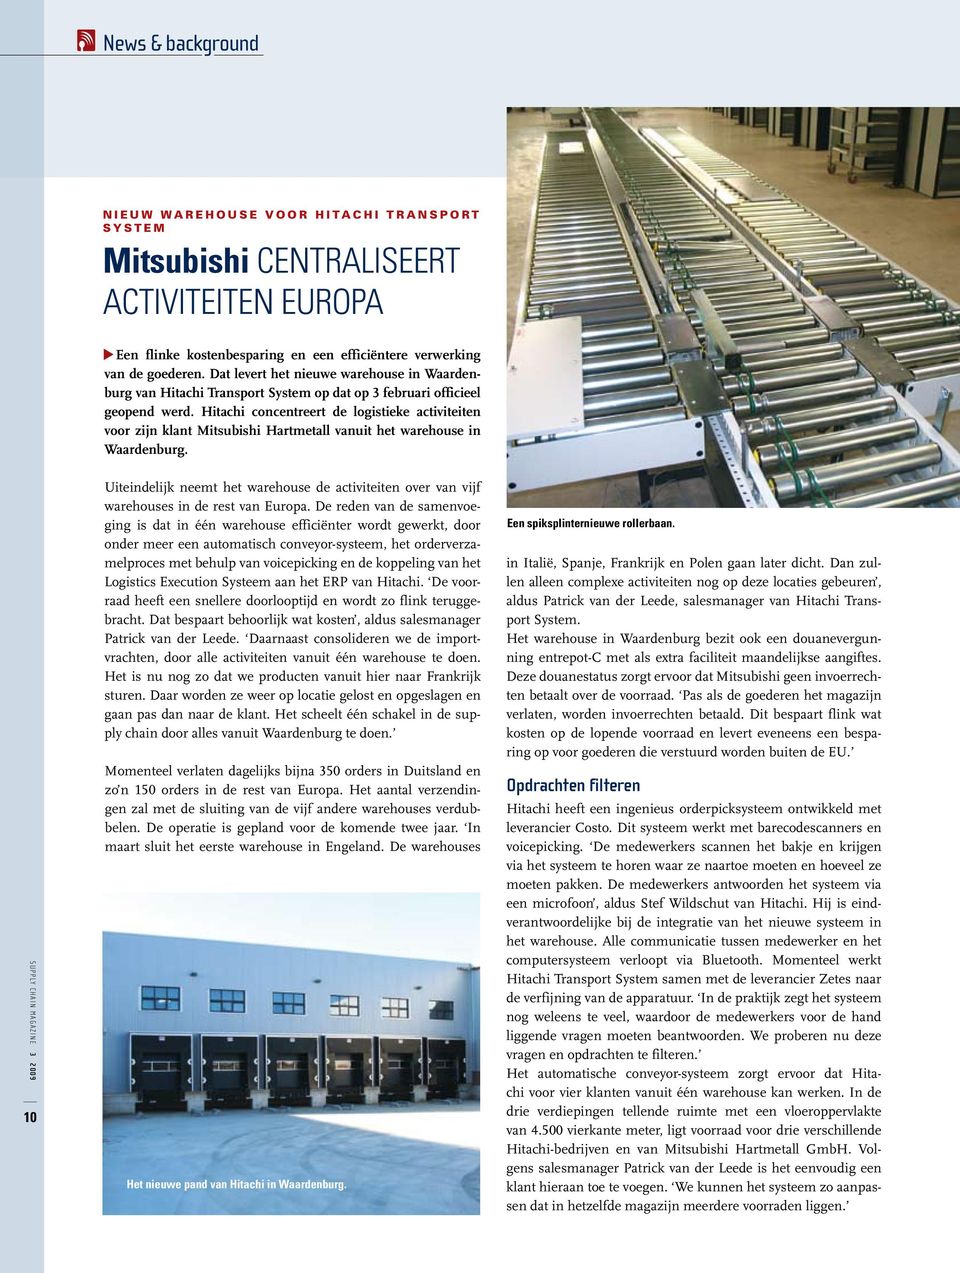 Hitachi concentreert de logistieke activiteiten voor zijn klant Mitsubishi Hartmetall vanuit het warehouse in Waardenburg.